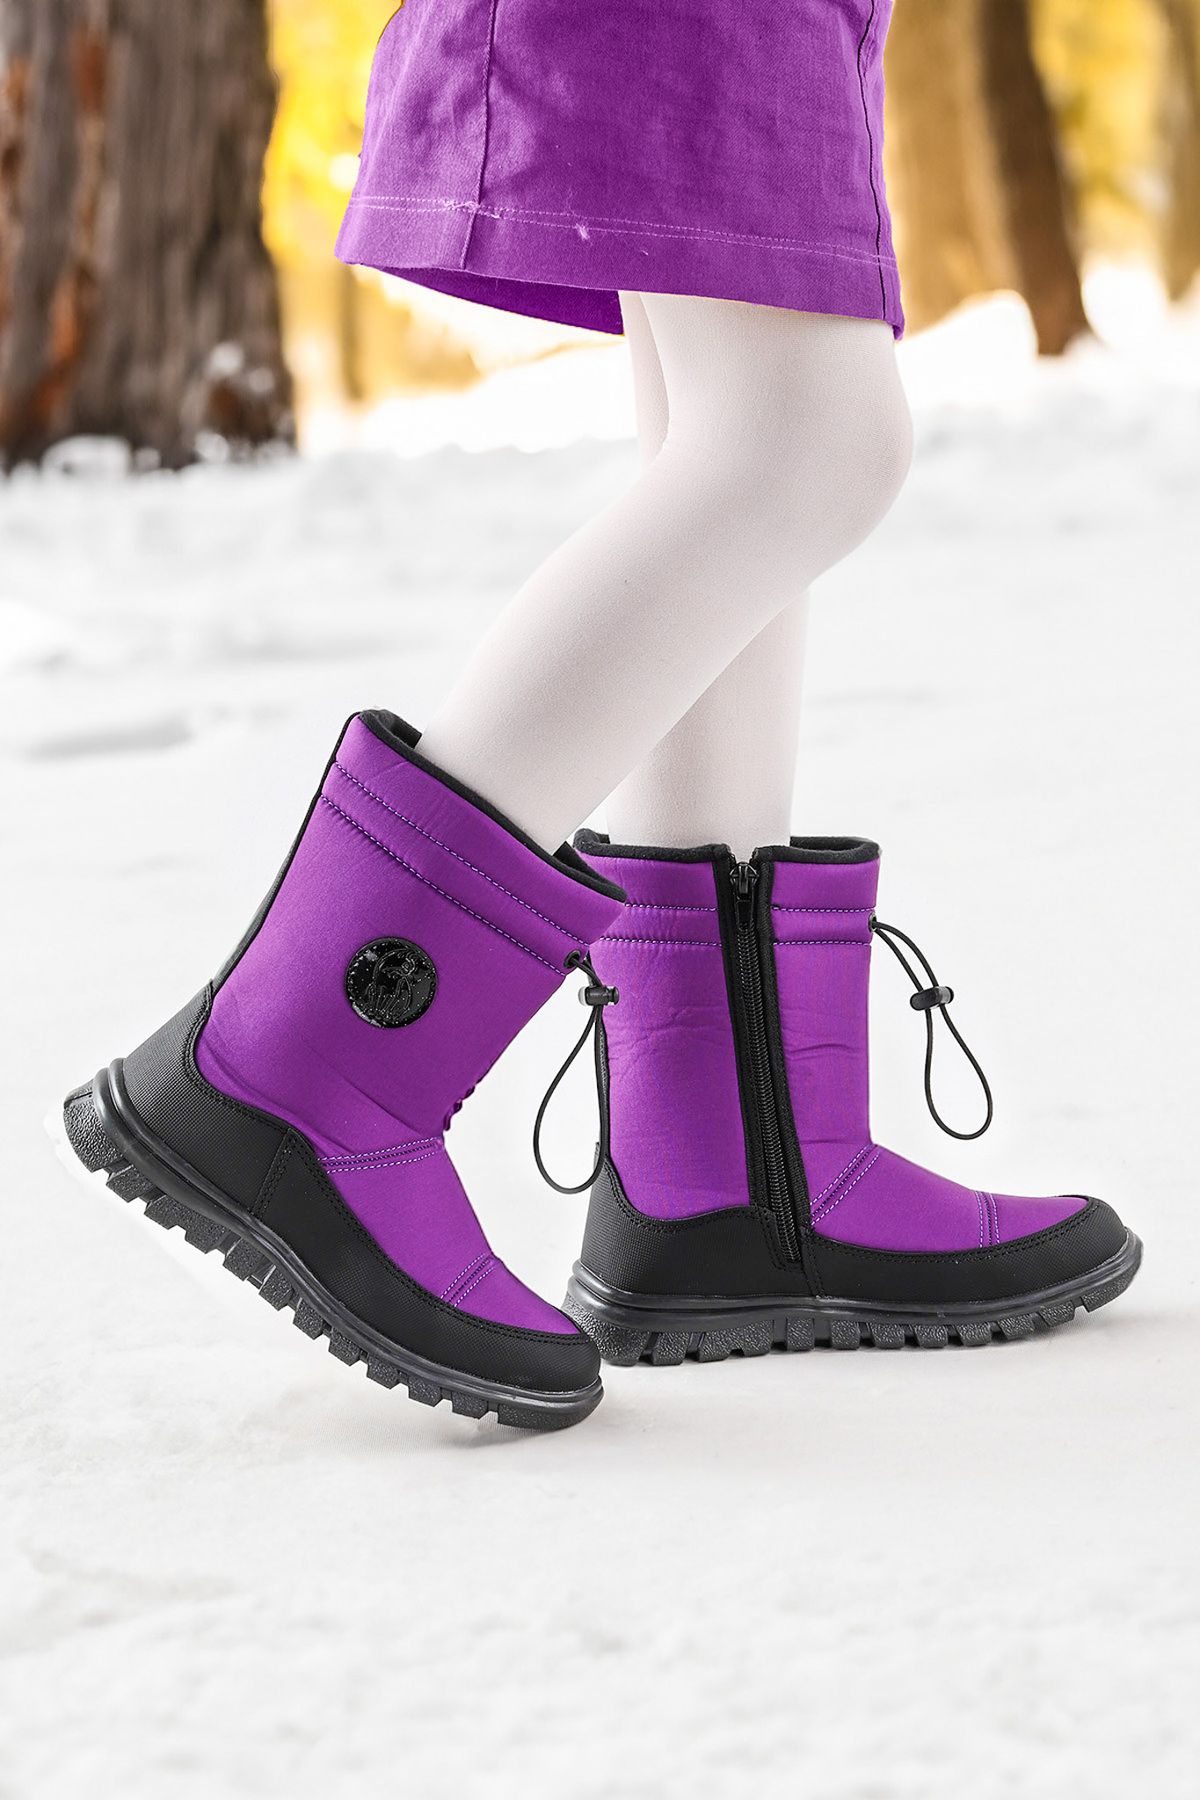 Kiko Kids Nuh Fermuarlı Kız/erkek Çocuk Kar Botu Ayakkabı